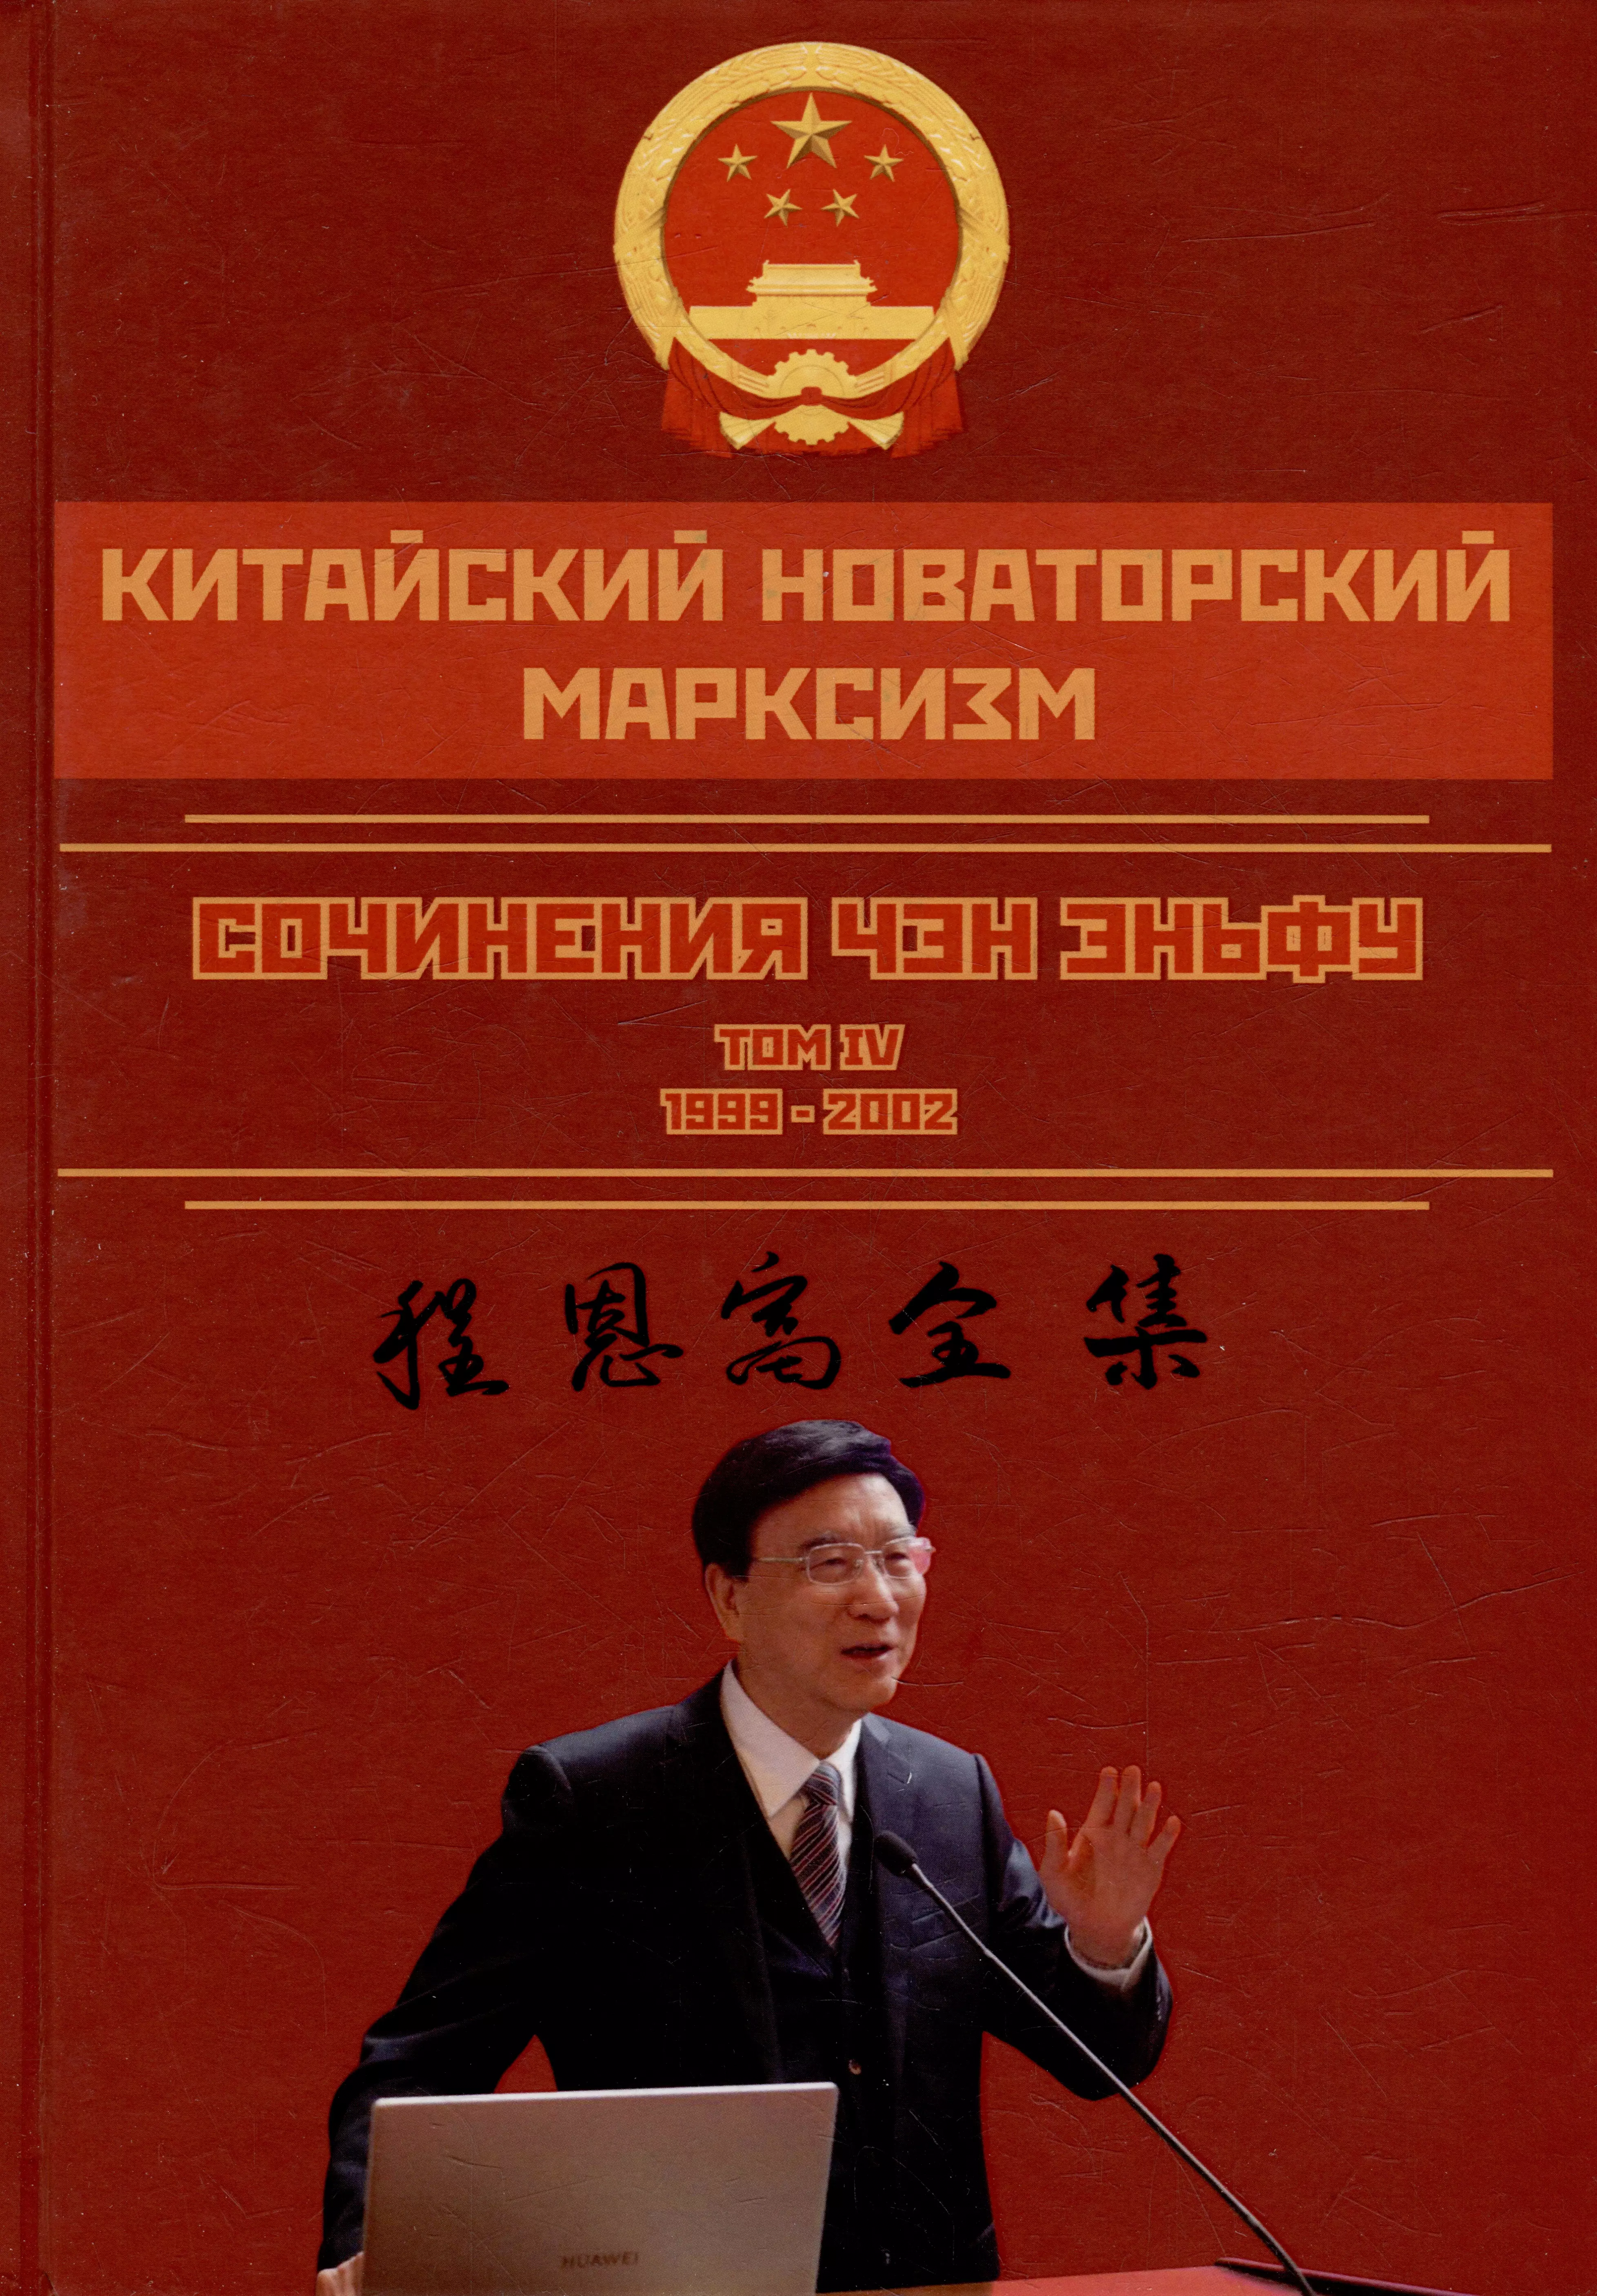 Китайский новаторский марксизм. Сочинения Чэн Эньфу. Том 4. 1999-2002 чэн эньфу китайский новаторский марксизм том 5 2003 2004